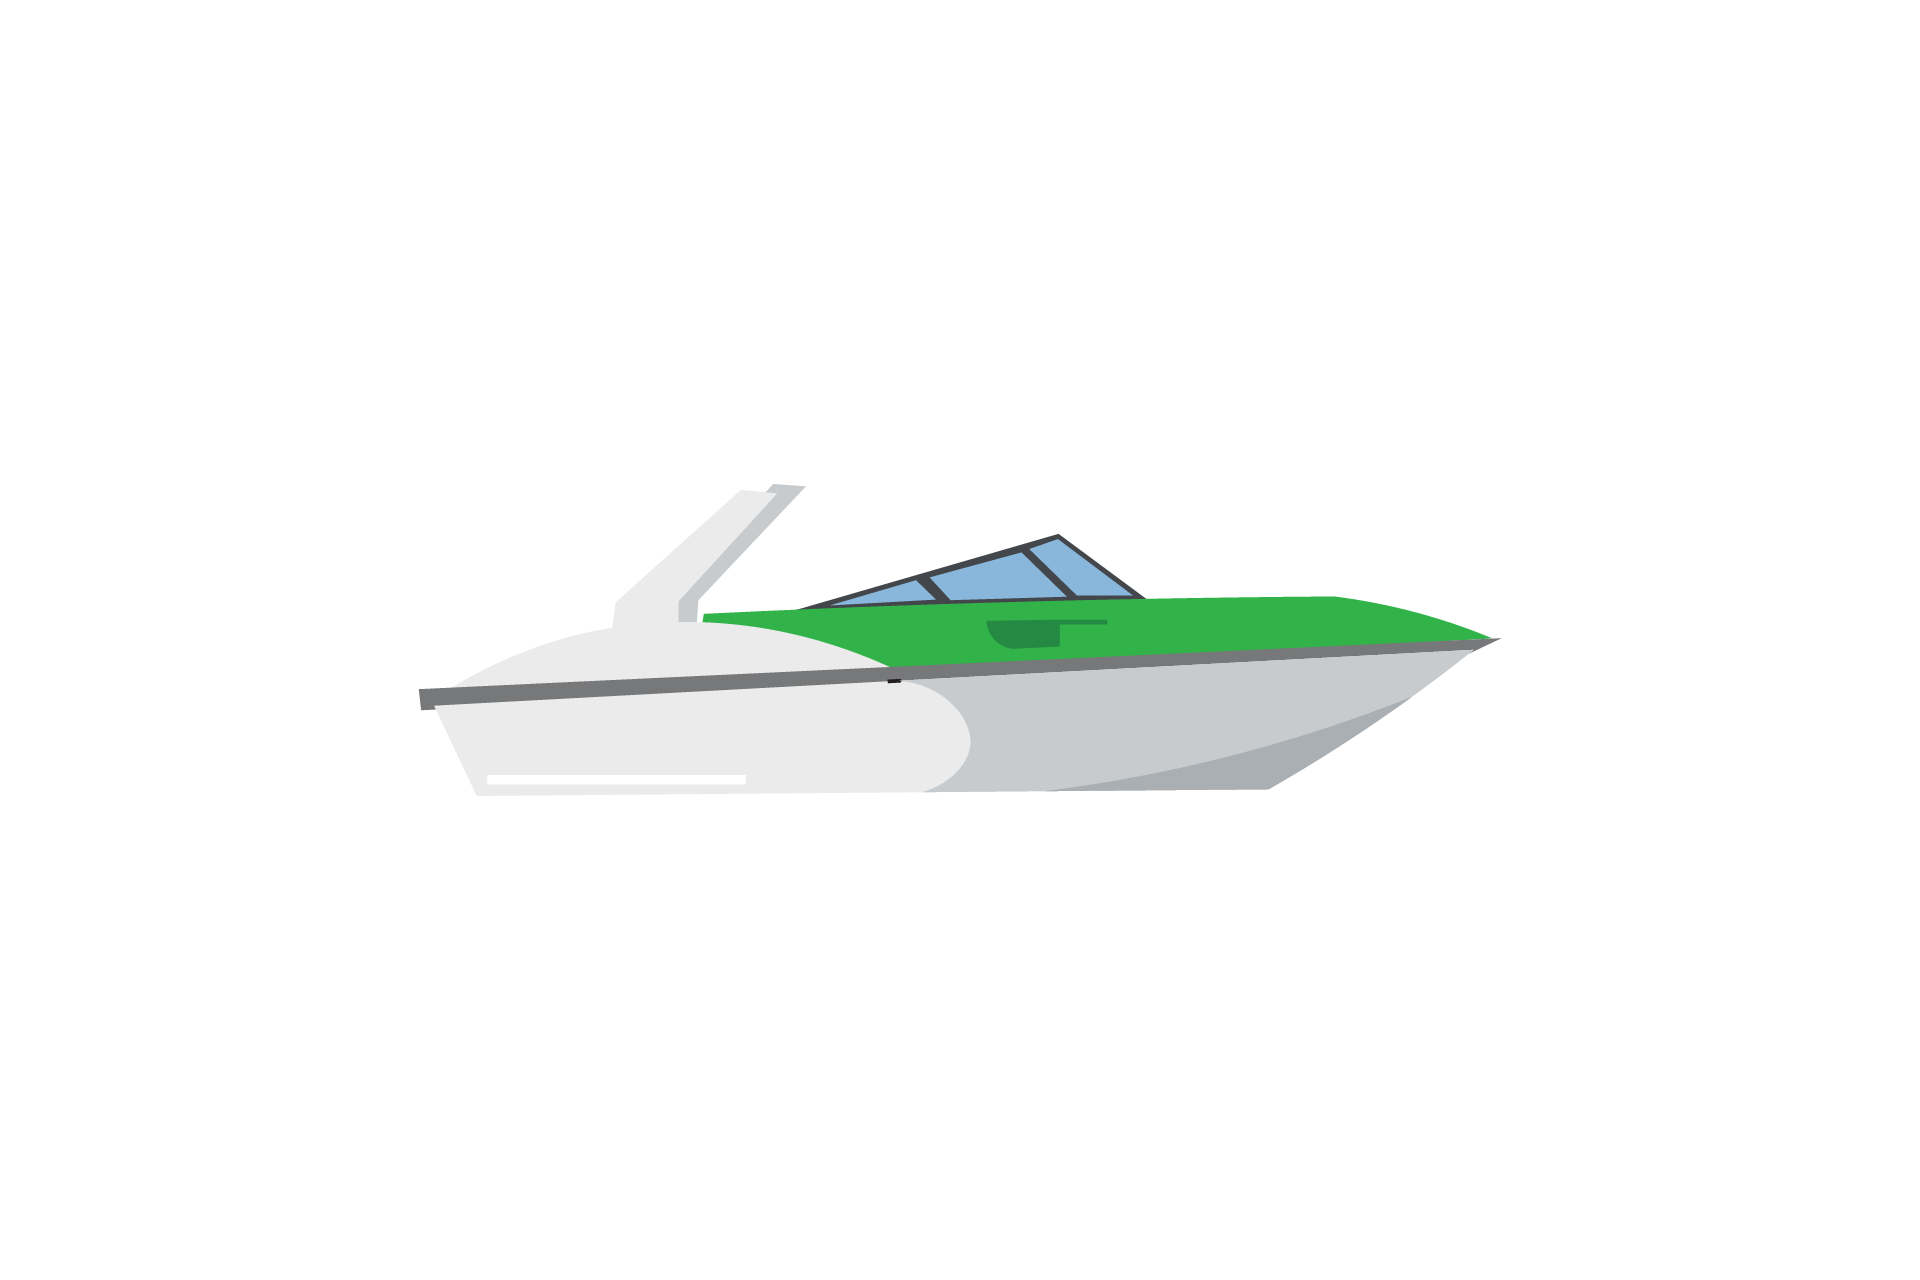 Boat-Illustration-Vector-Transportations-Graphics-